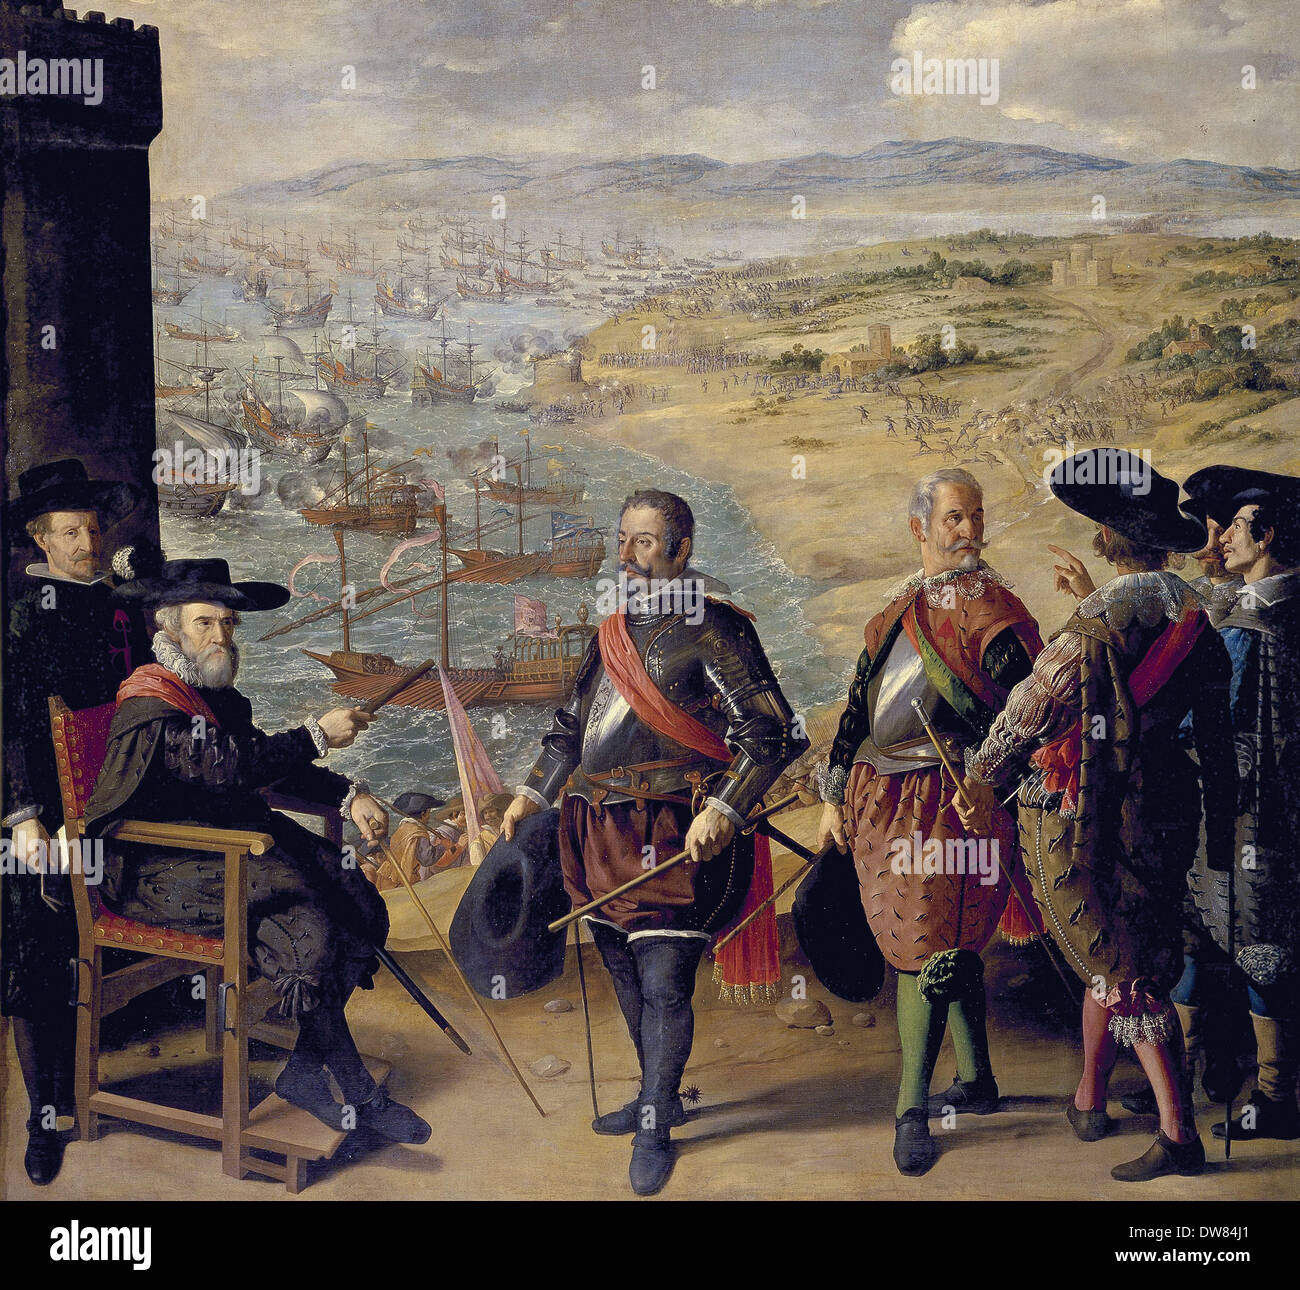 Francisco de Zurbarán - The Defense of Cadiz against the English - 1634 - Madrid Museo del Prado Stock Photo